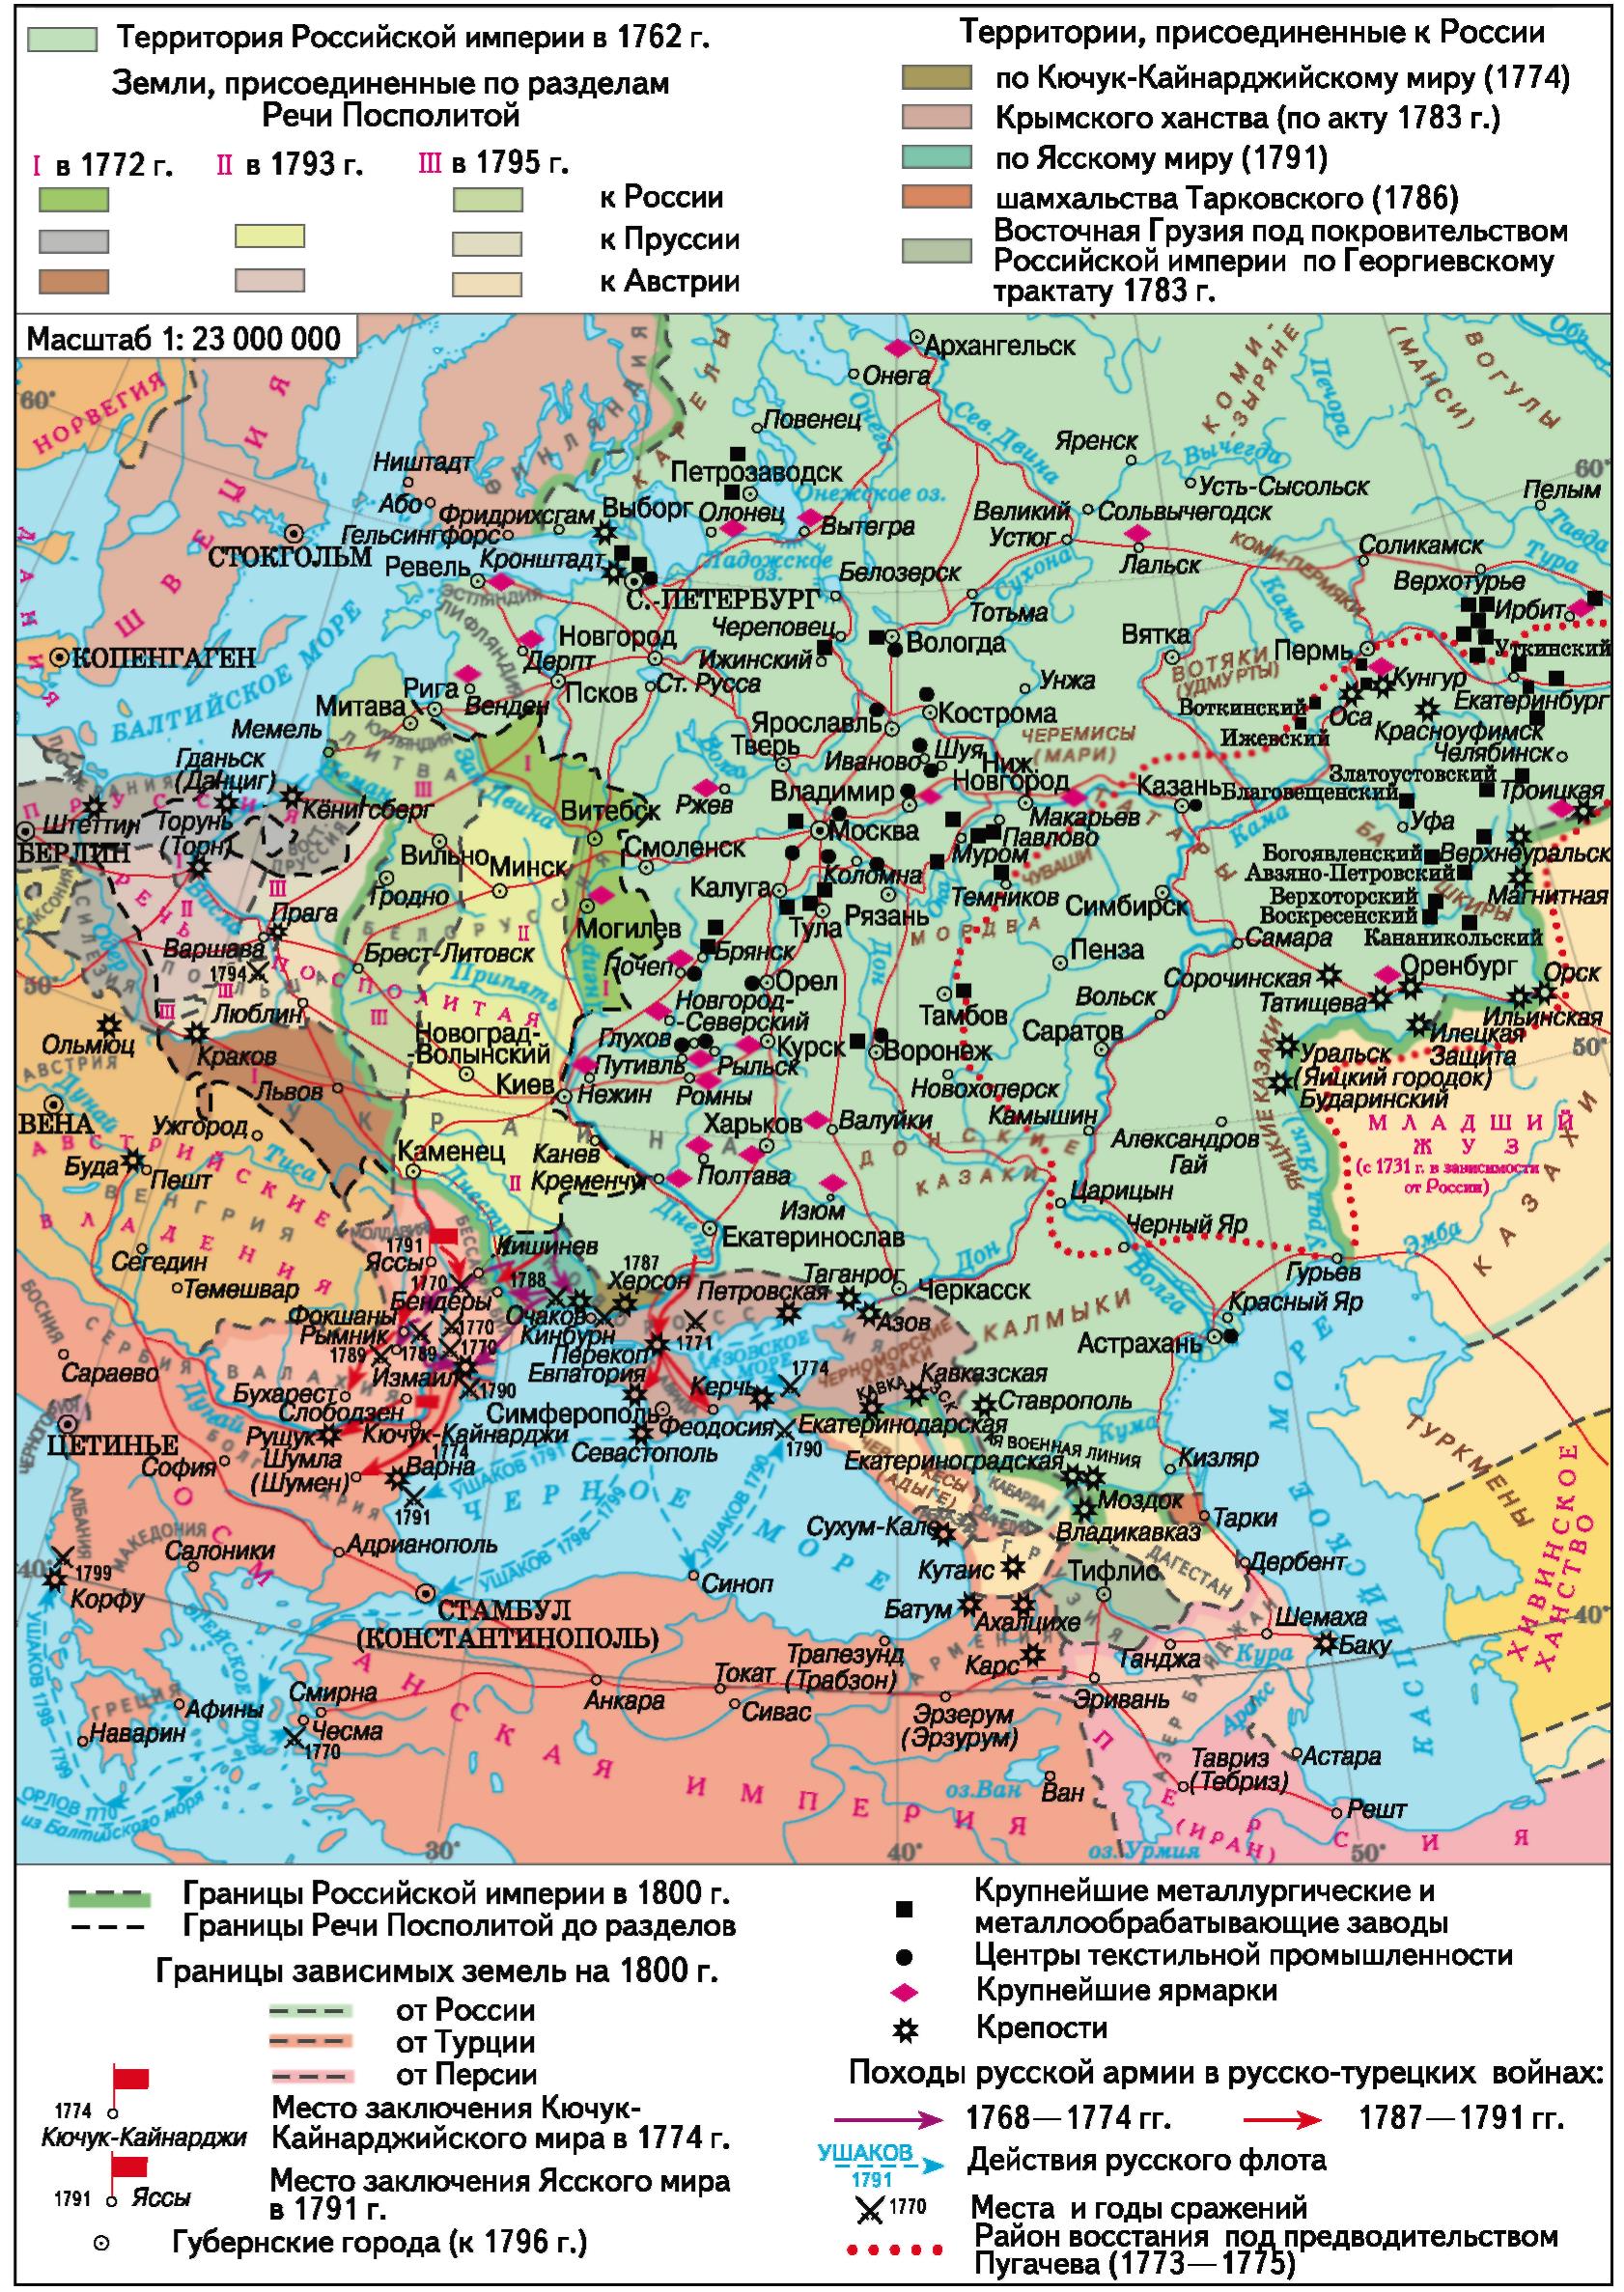 Российская империя в 1763 1800 гг. Европейская часть России во второй половине 18 века карта. Карта Российской империи 18 век. Российская Империя 18 век карты европейская часть. Карта Российской империи 18 века европейская часть.